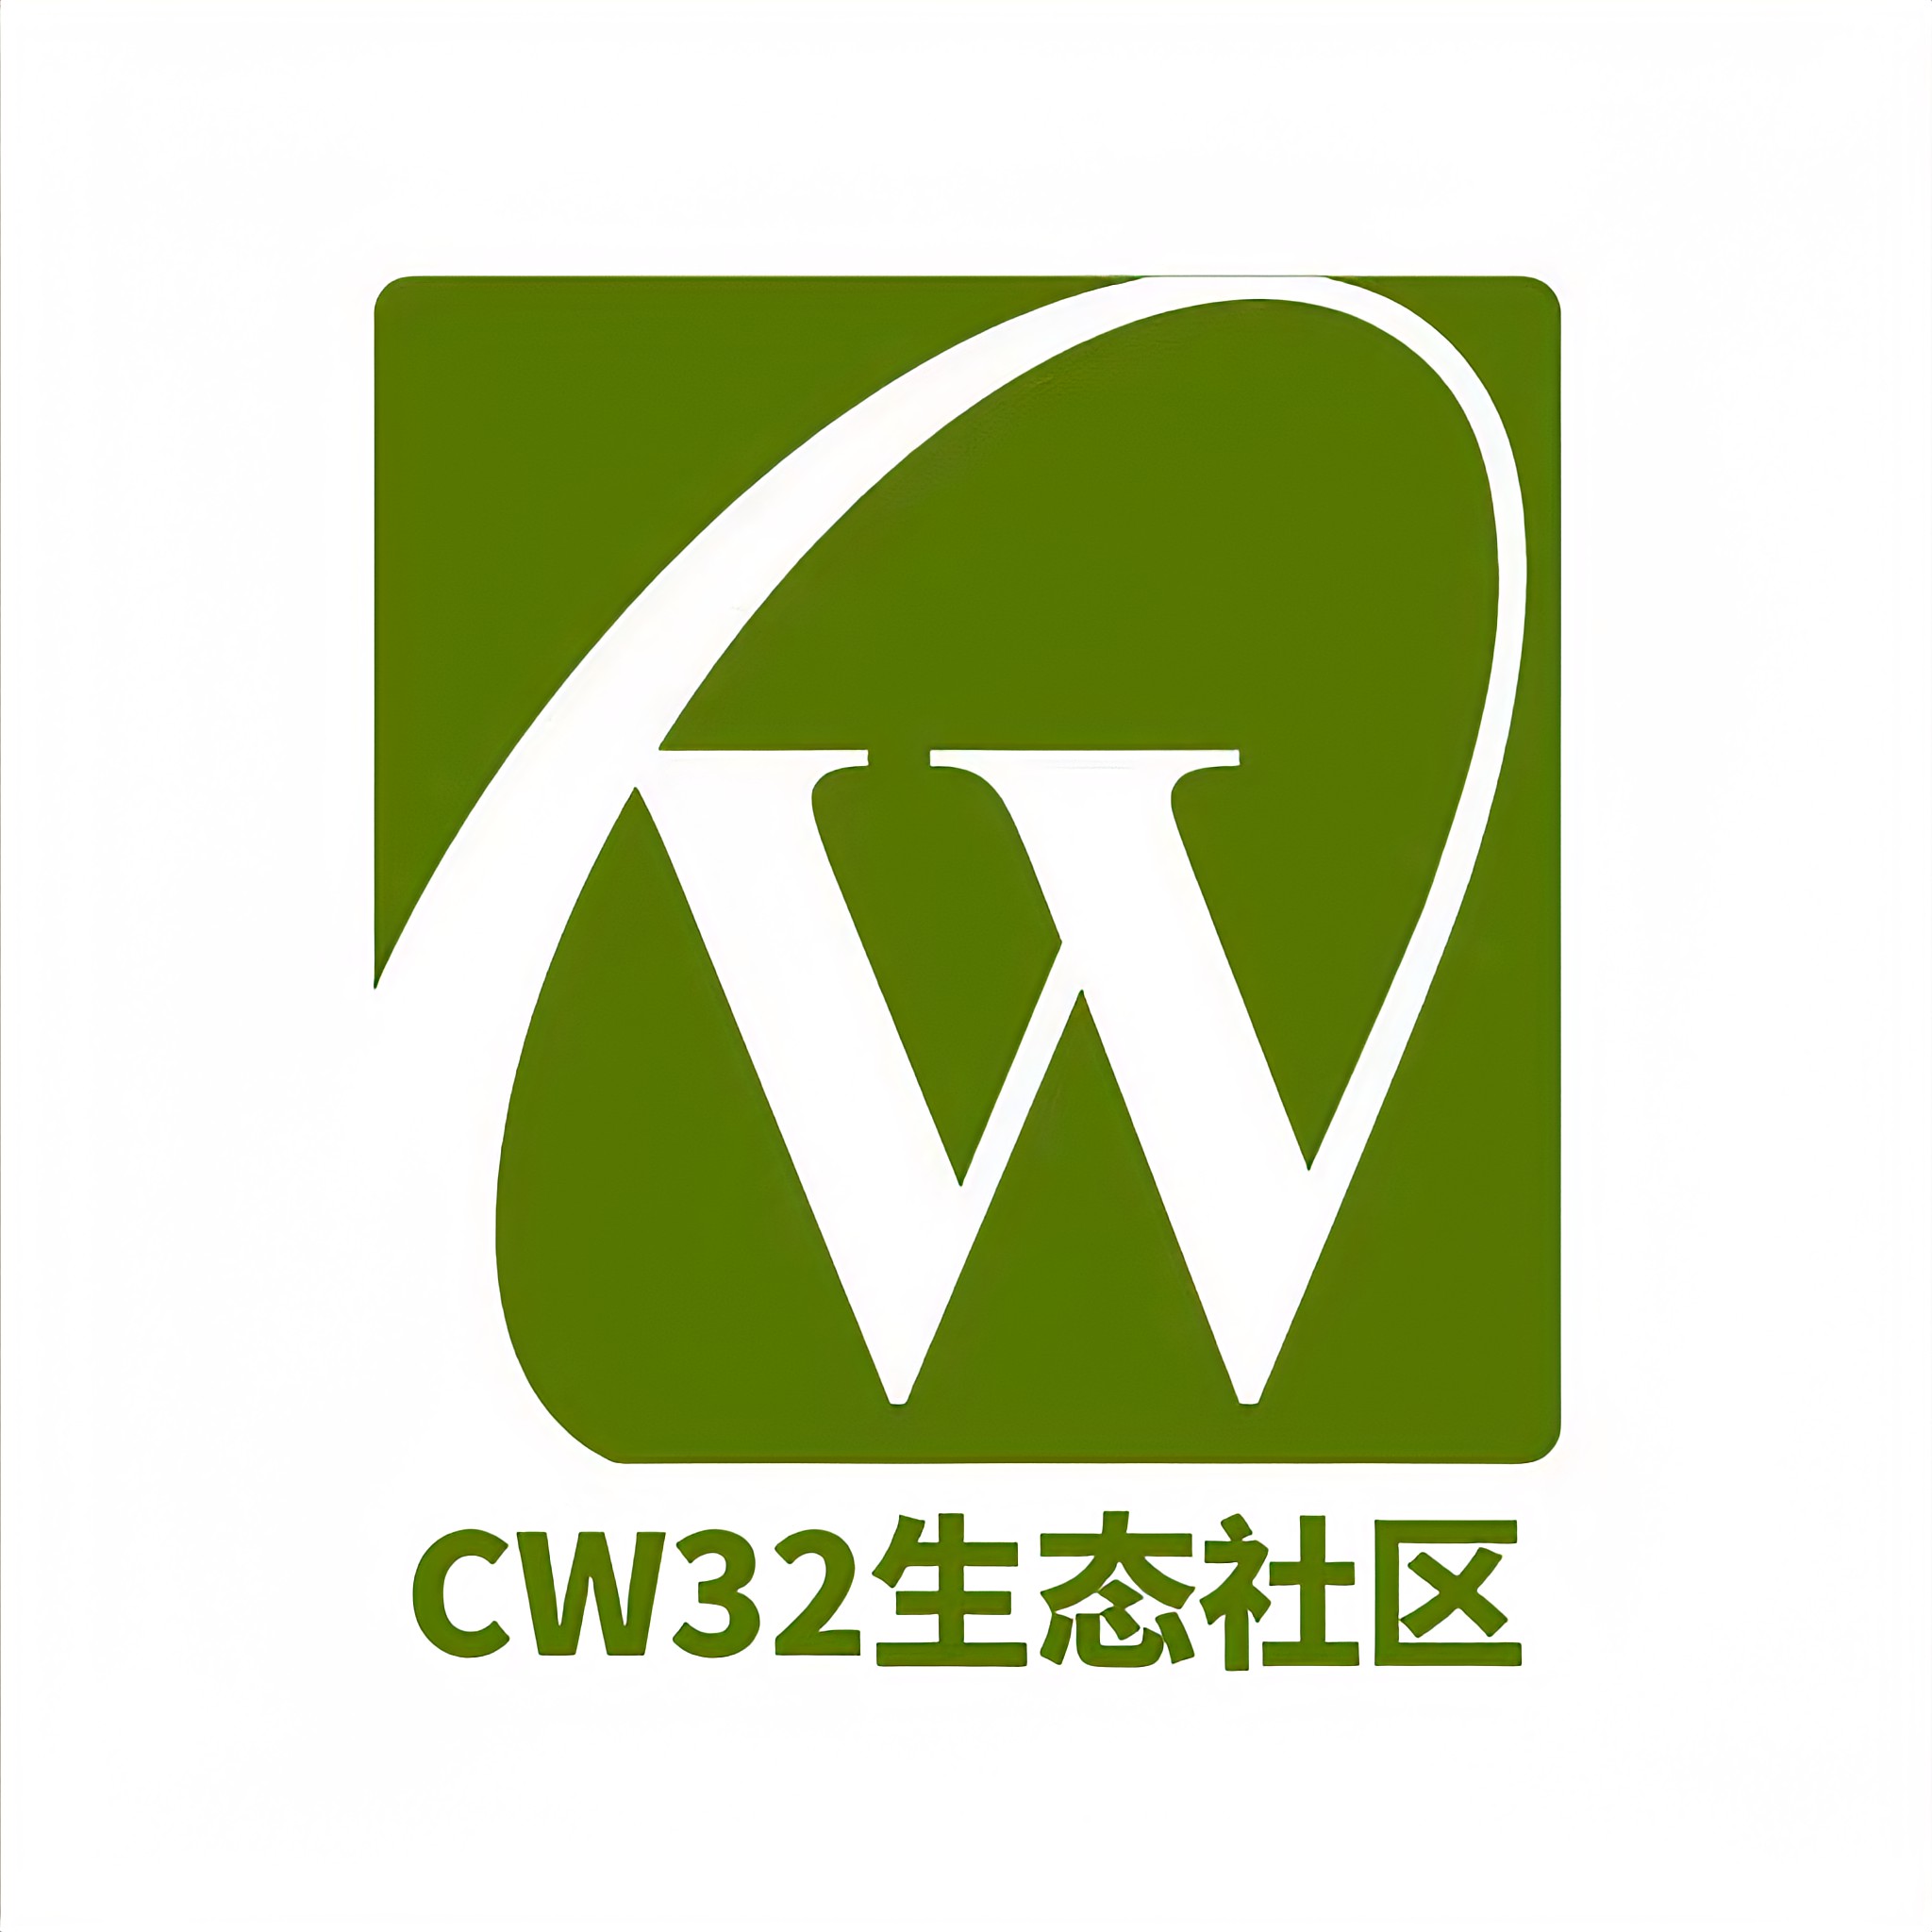 CW32生态社区